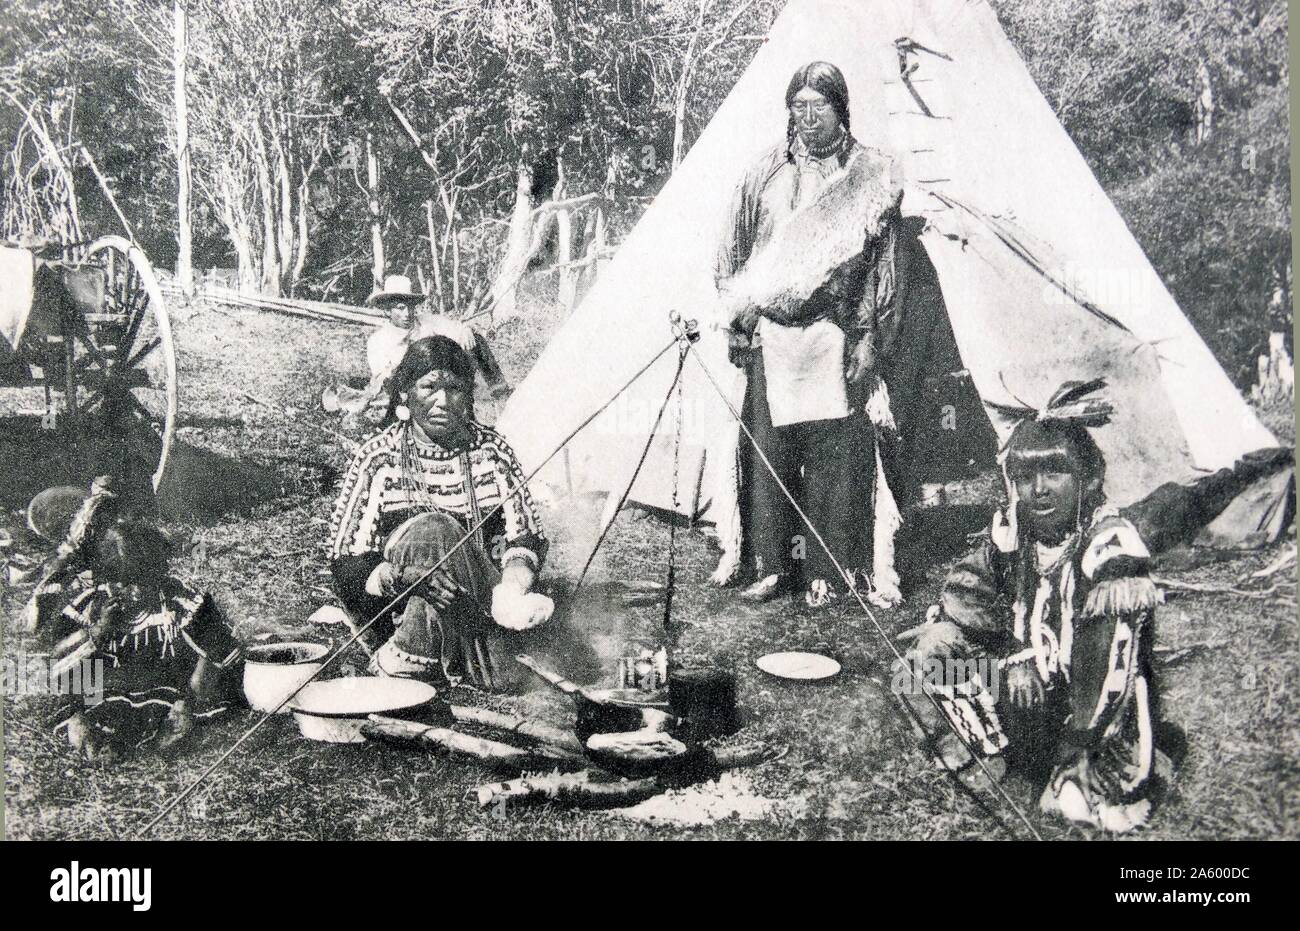 Los indios americanos en frente de un wigwam o tepee 1900 Foto de stock